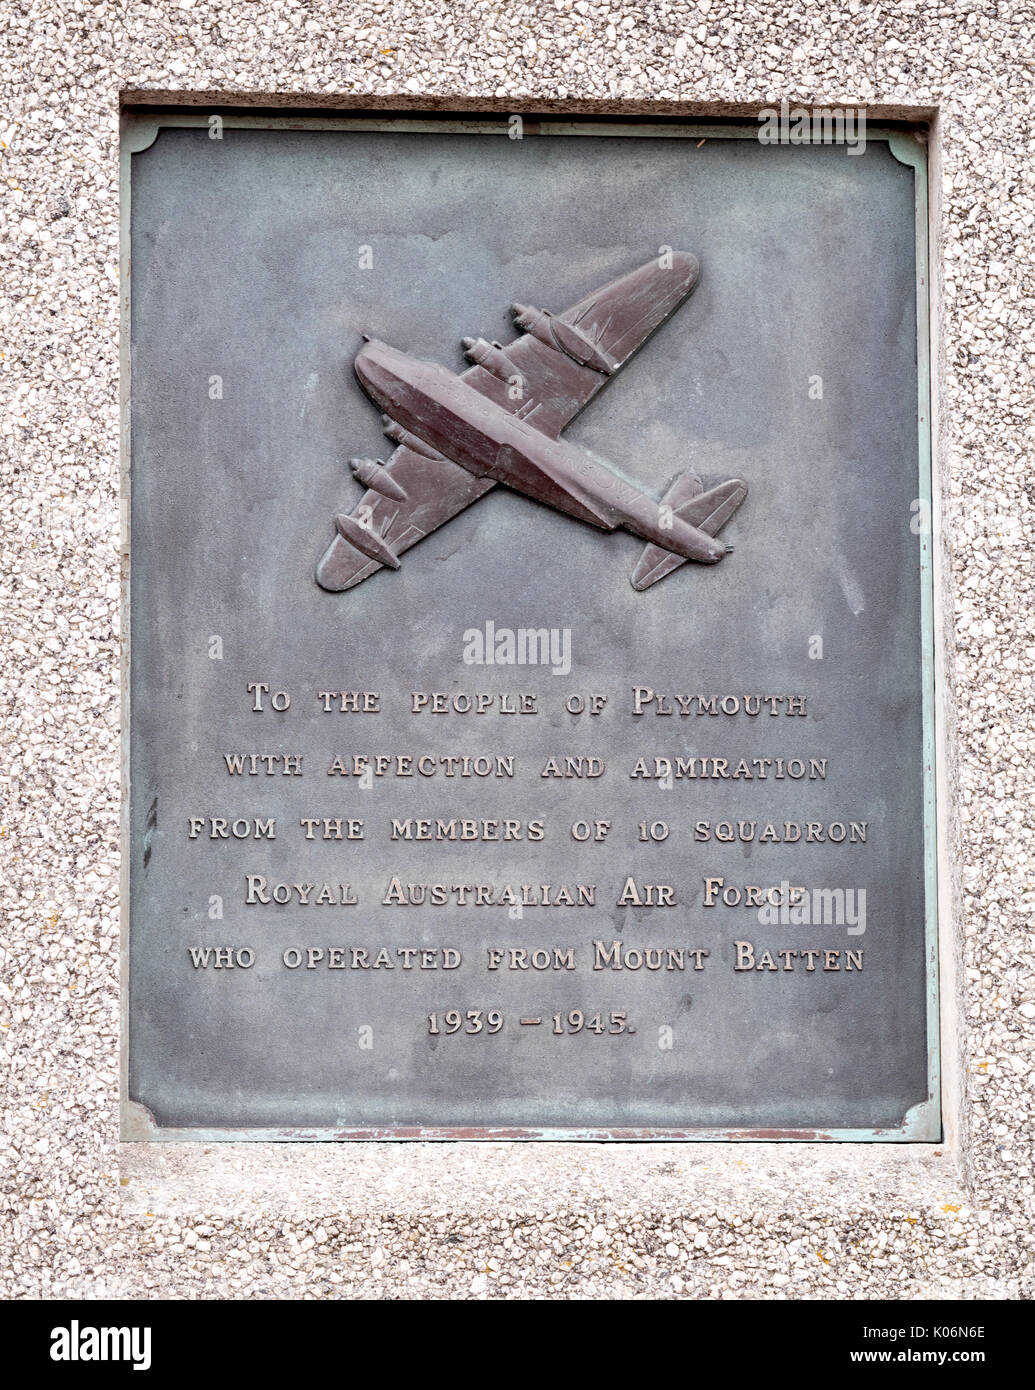 Plaque commémorative au peuple de Plymouth à partir de 10 Squadron de la Royal Australian Air Force qui étaient stationnés à Mount Batten 1939 -19445 Banque D'Images